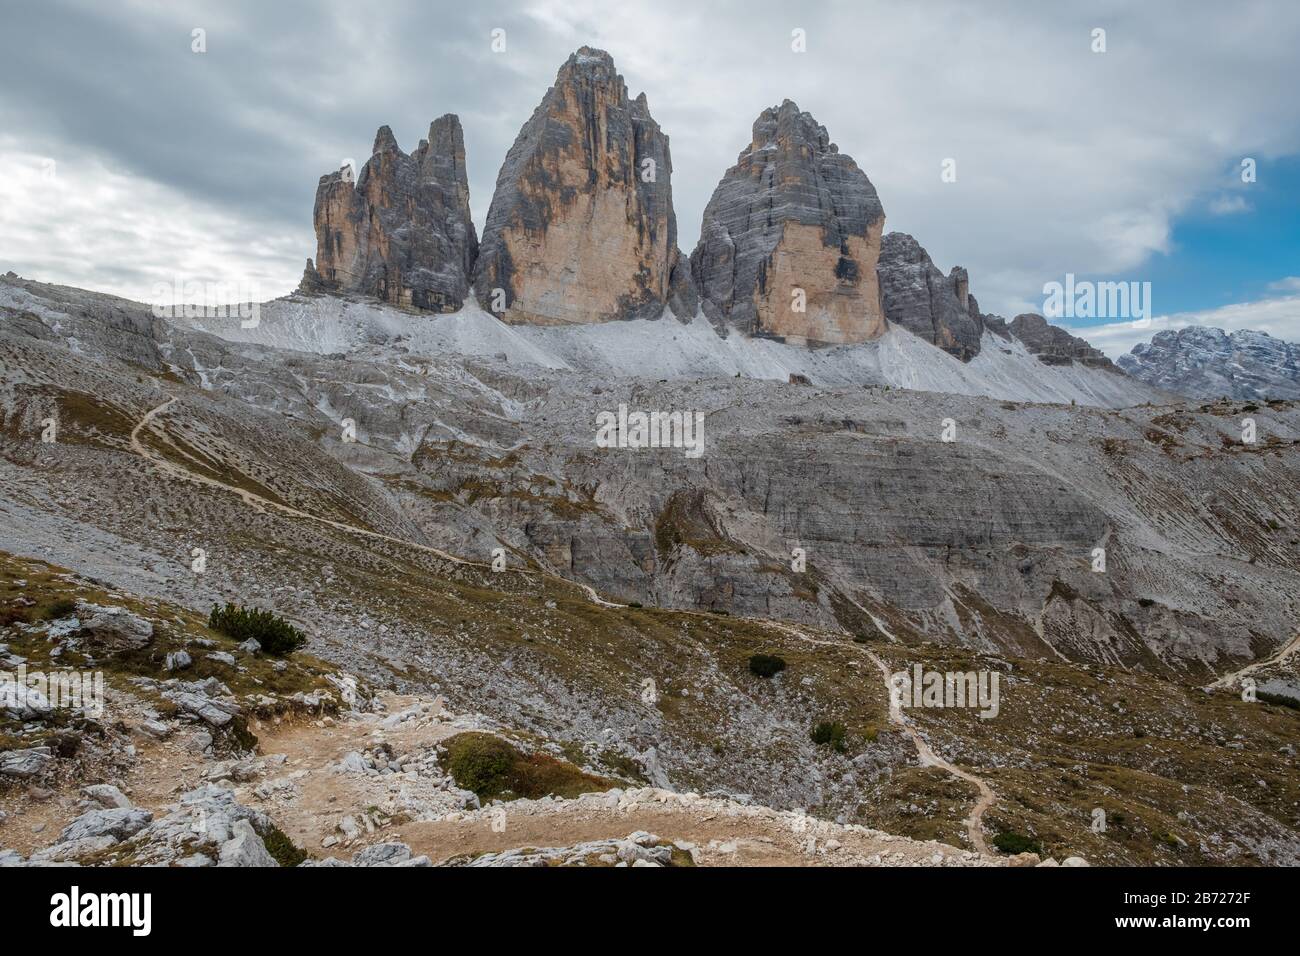 Ein Wanderpfad, der felsig in Richtung markanter Felsformationen hinaufzieht, die in Italien als Drei Kamine oder Tre Cime oder in Österreich als drei Zinnen bekannt sind Stockfoto